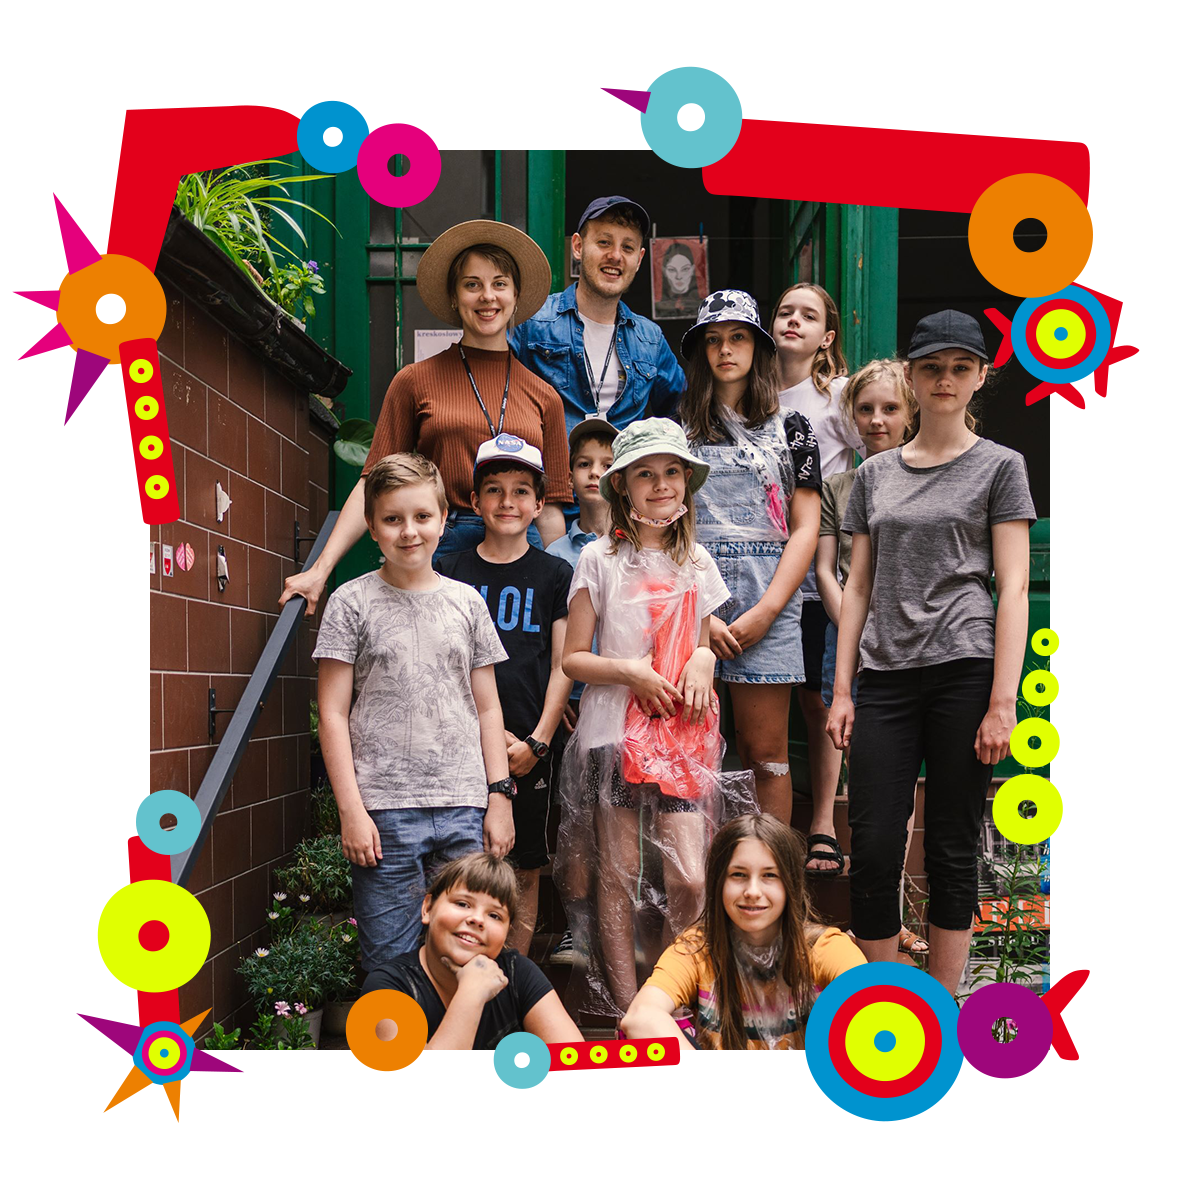 Grupa dzieci wraz z dwójką dorosłych pozuje do zdjęcia. Stoją na schodach przed budynkiem. Uśmiechają się. Niektóre osoby mają na głowach letnie kapelusze lub czapki z daszkiem. Dookoła zdjęcia kolorowa ramka.